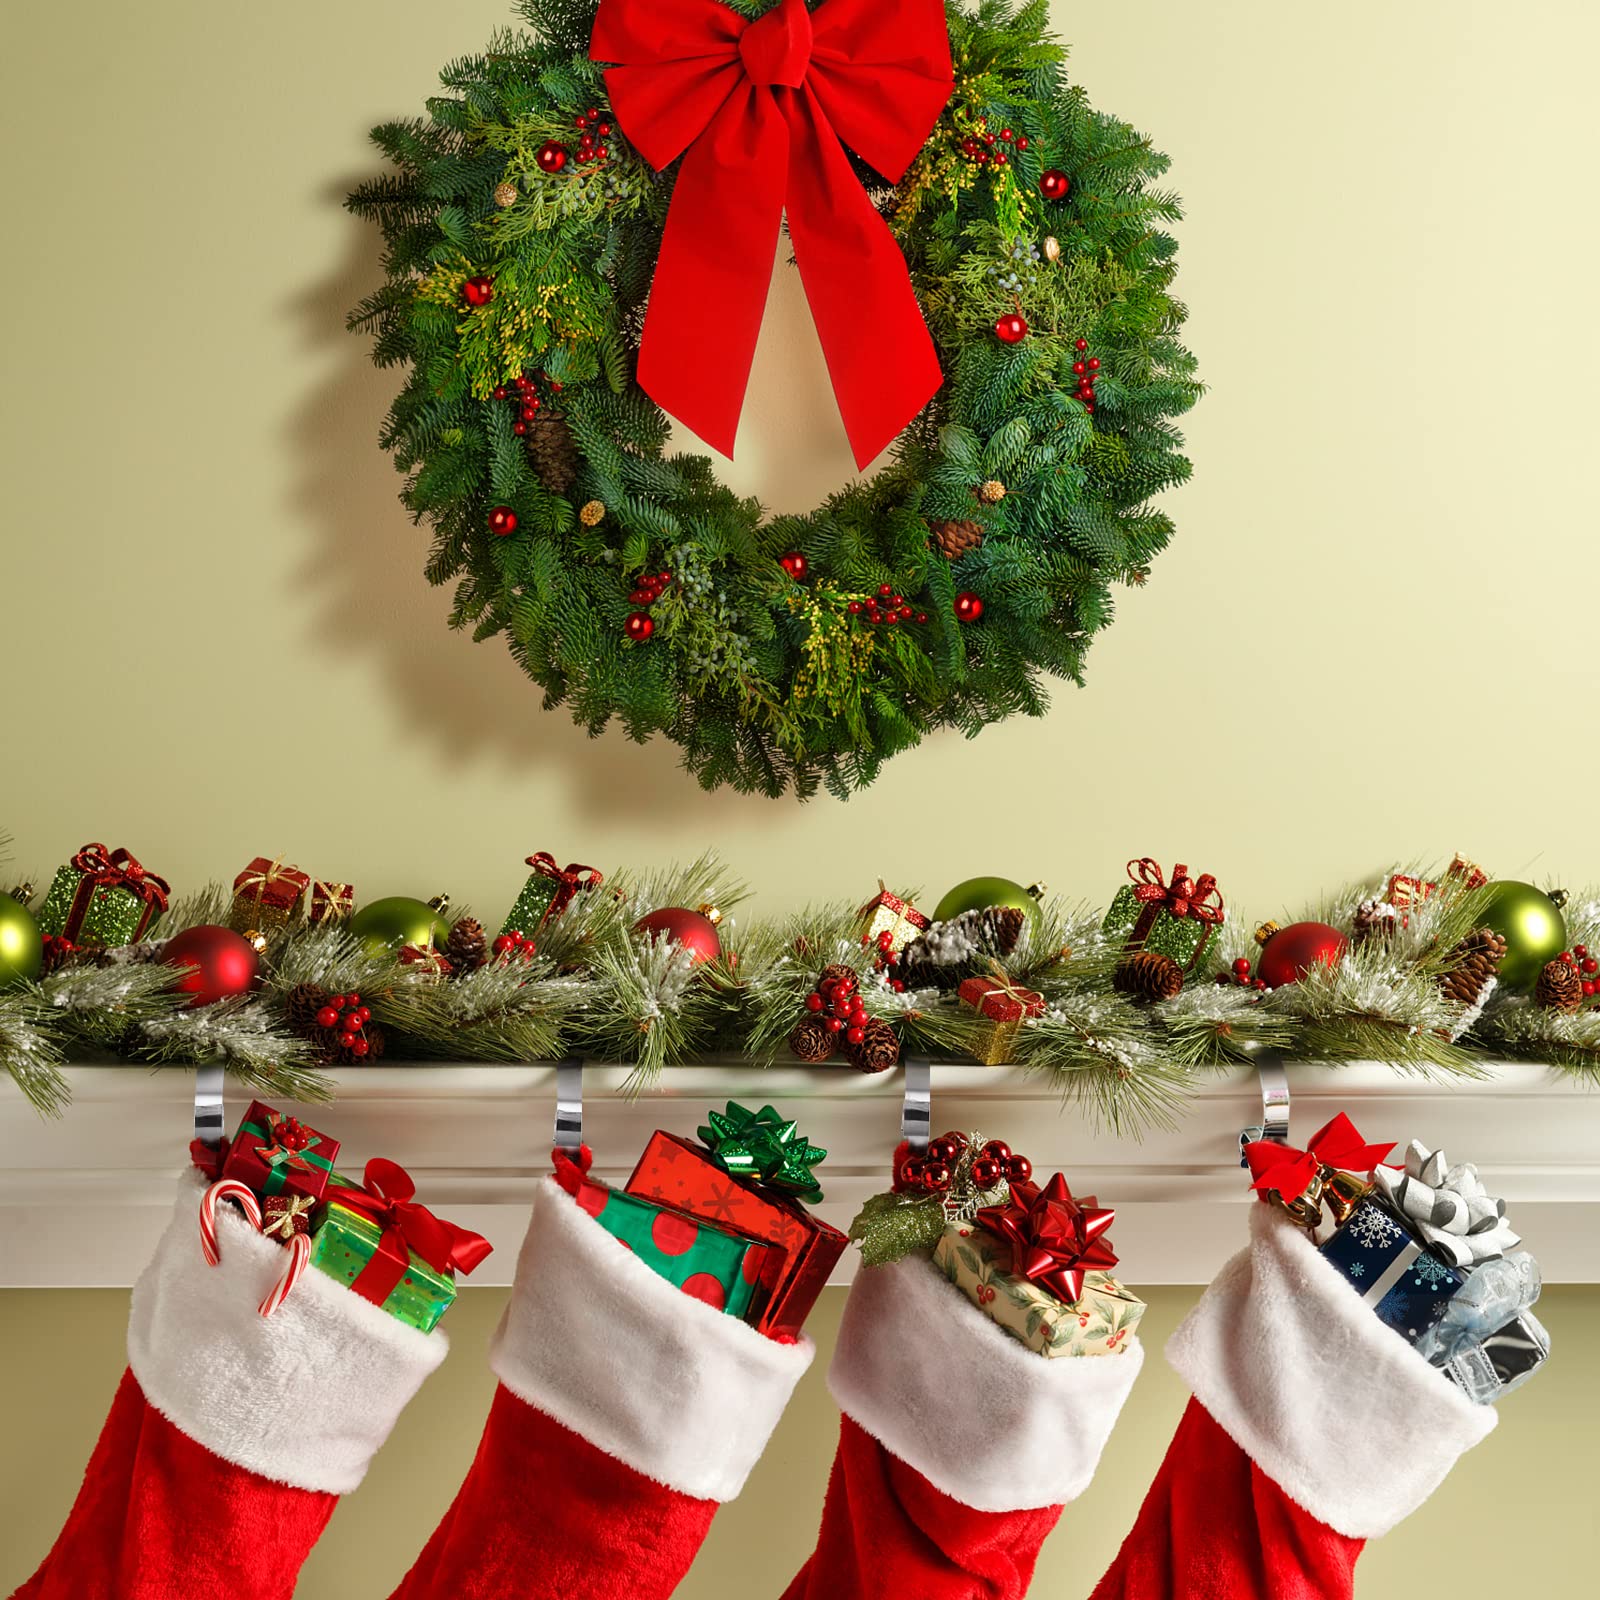 Christmas 3D Mantel Stocking Hanger